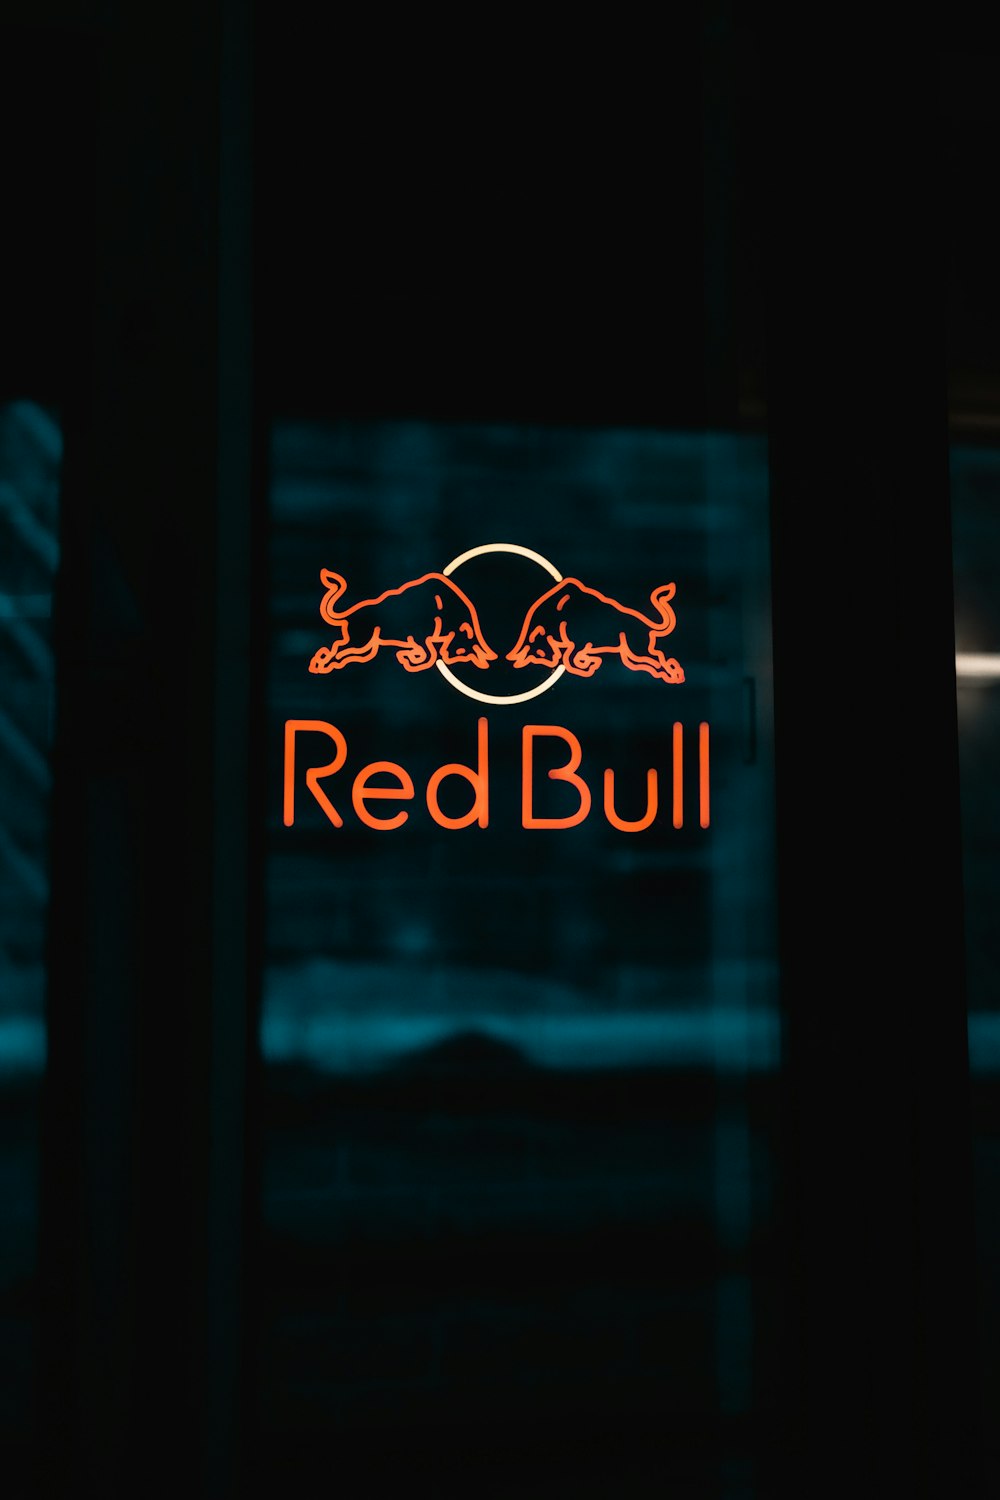 Más de 500 imágenes de Red Bull [HD] | Descargar imágenes gratis en Unsplash